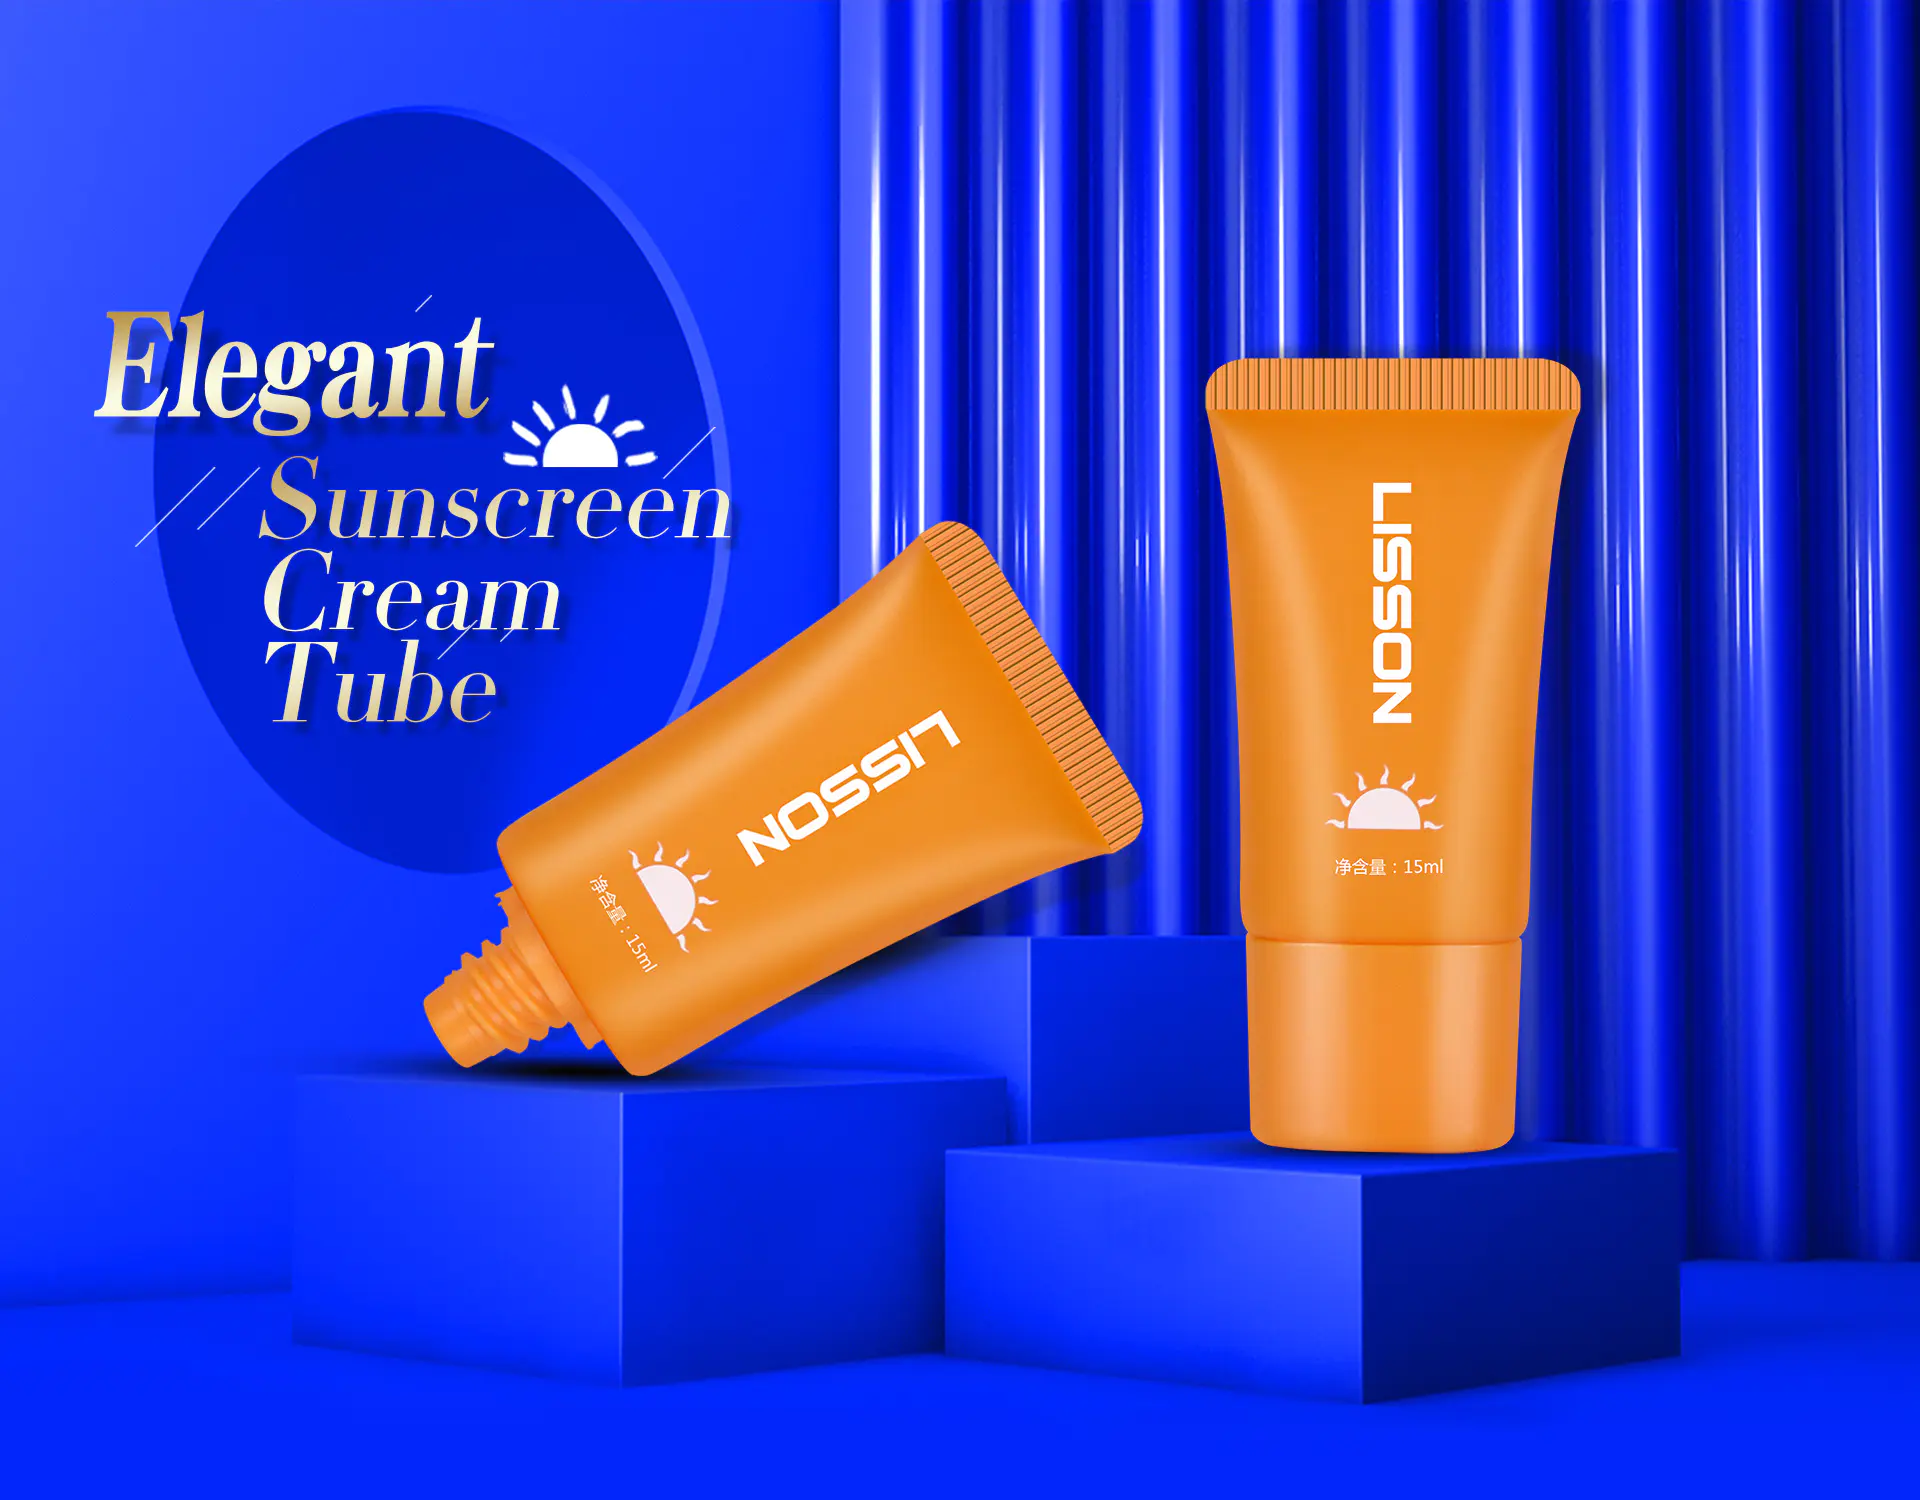 15ml oval plastic tube packaging elegant sunscreen cream tube